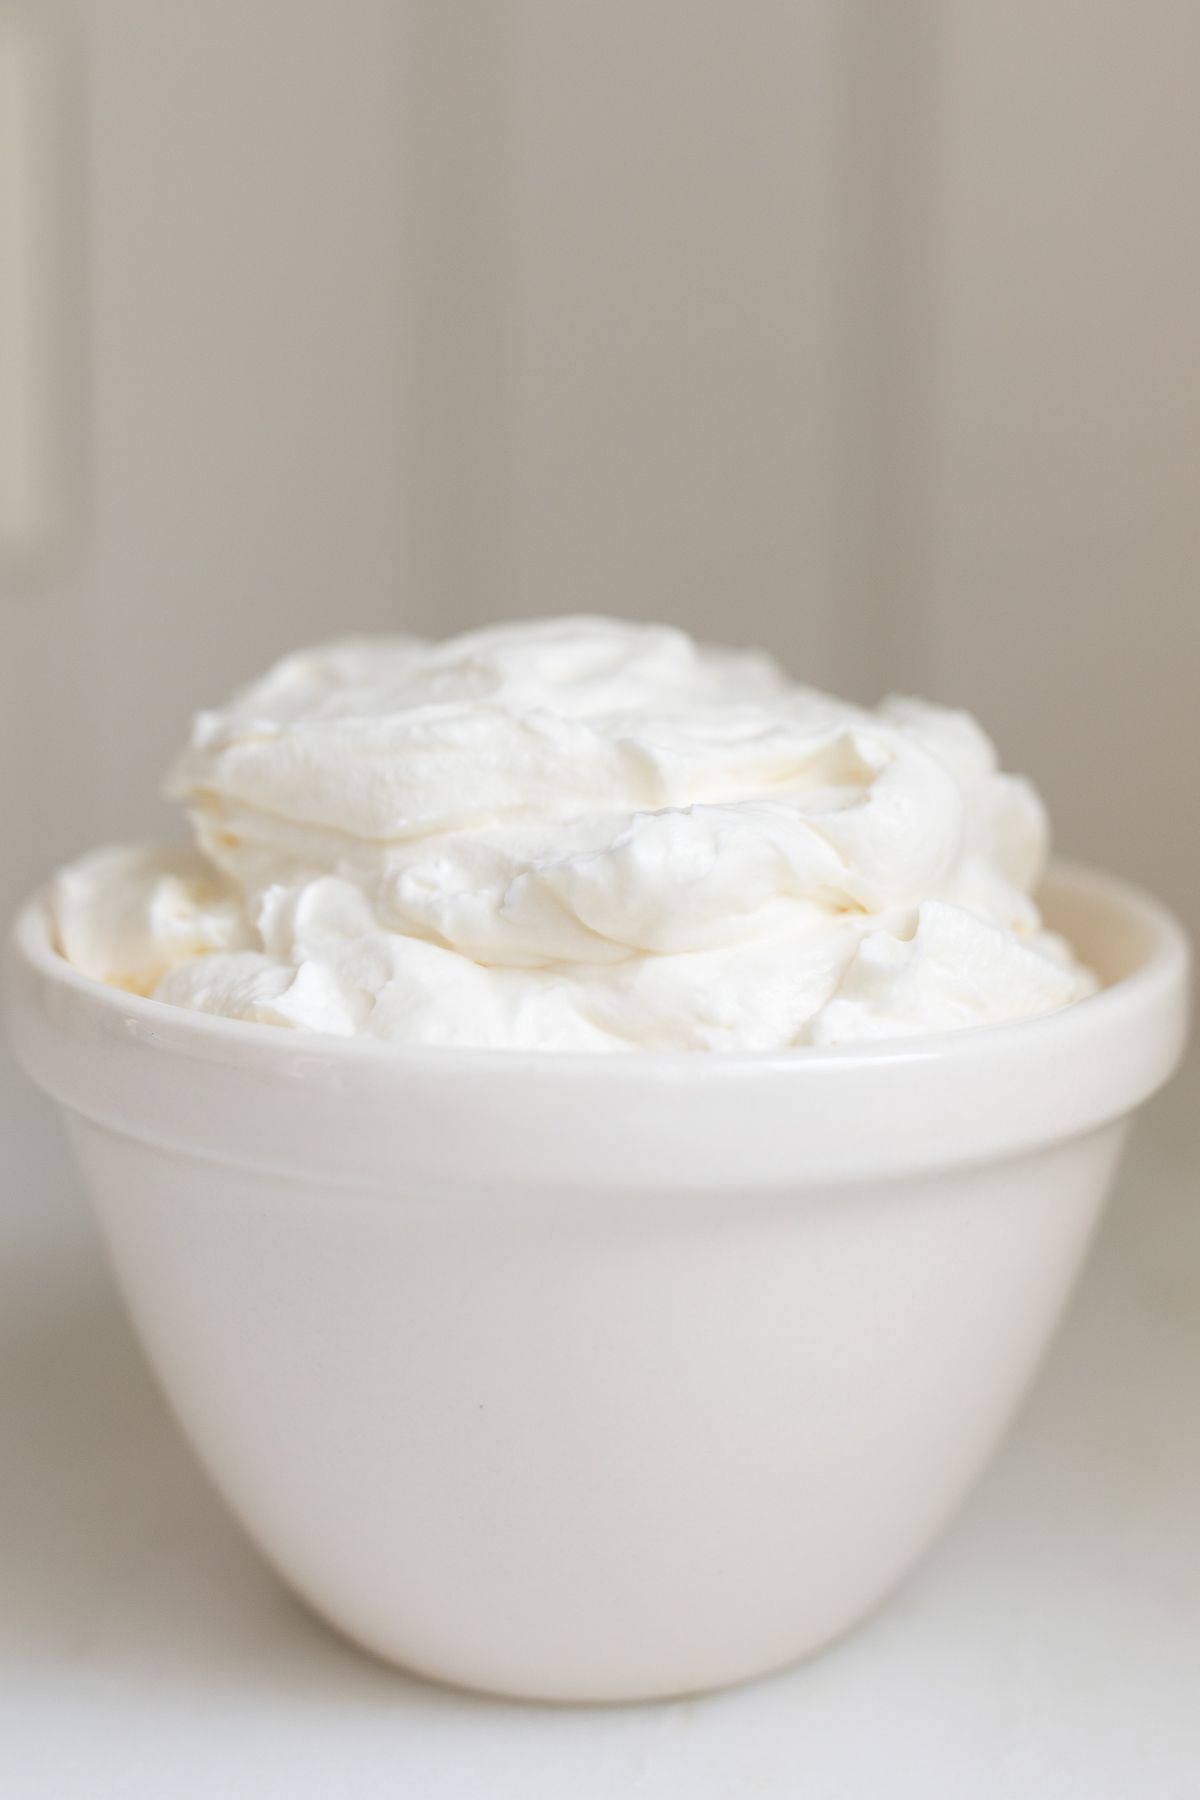 A white bowl full of homemade whipped cream.